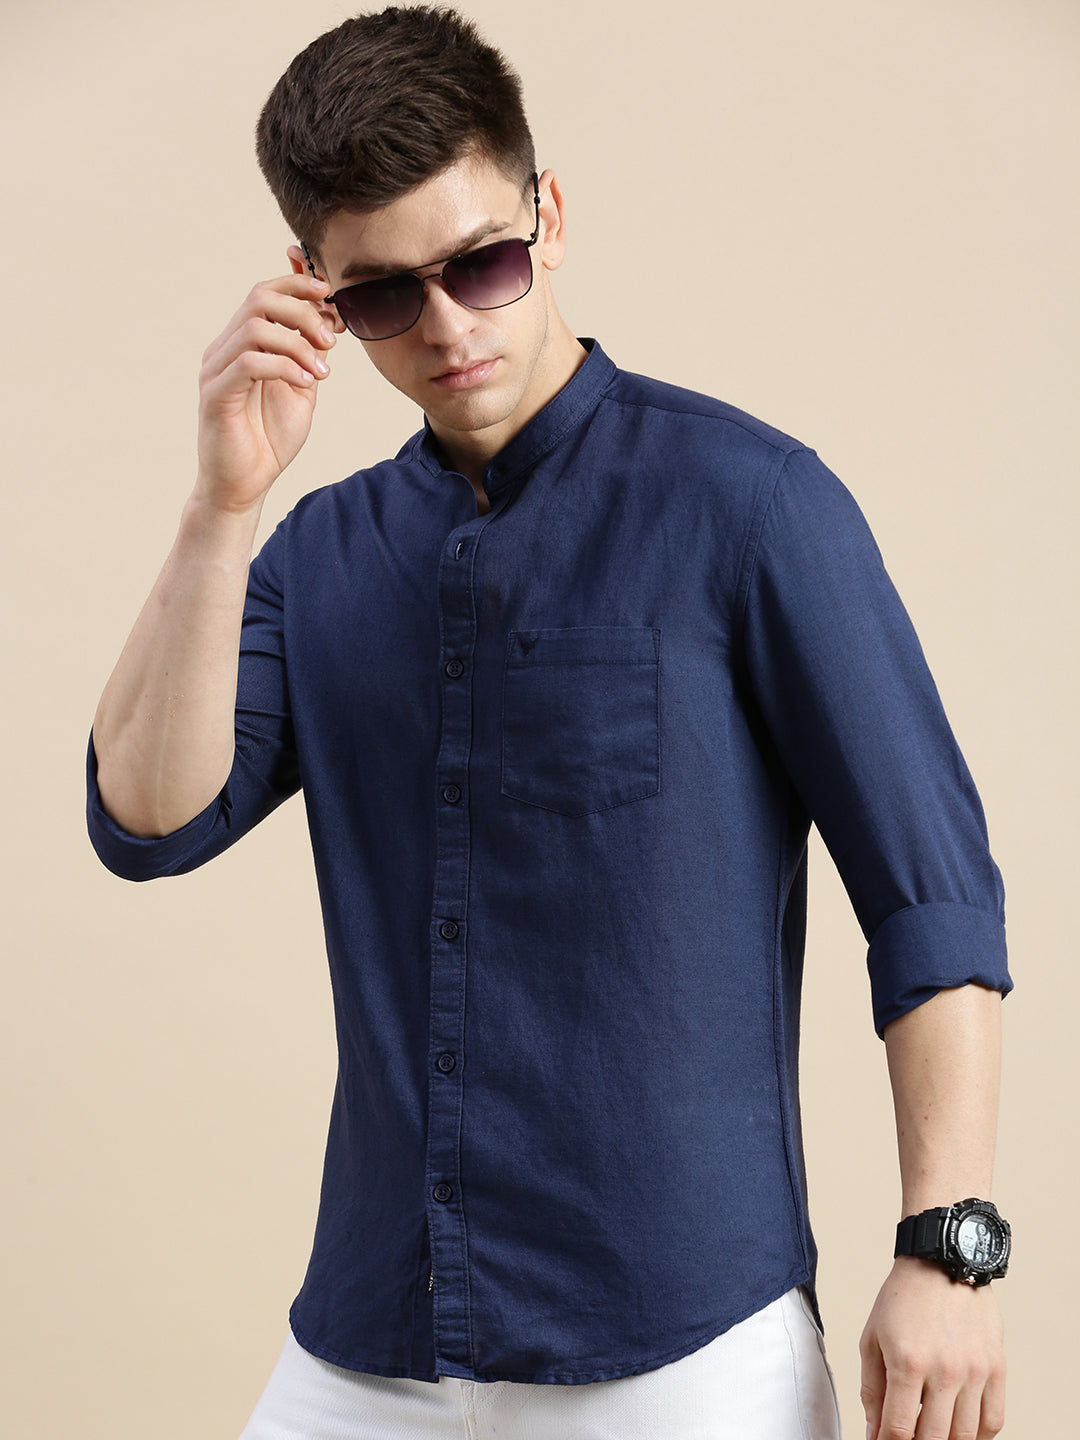 Men Mandarin Collar Solid Navy Blue Shirt